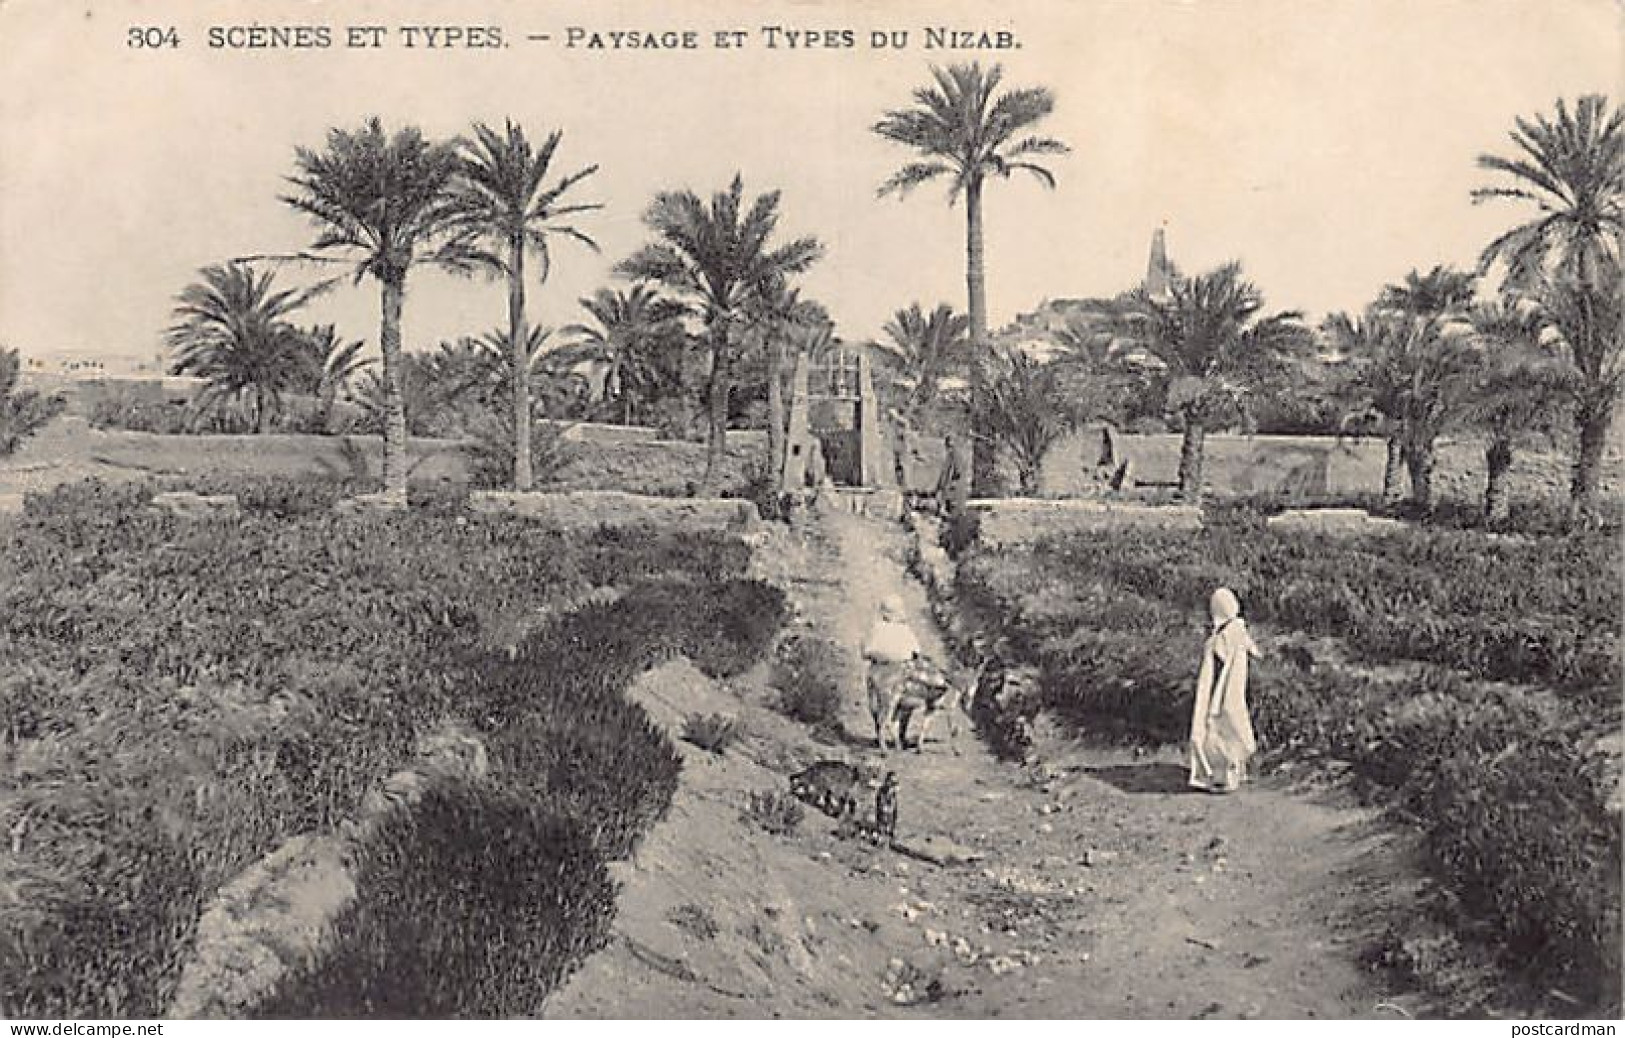 Algérie - Paysage Et Types Du M'Zab - Ed. Collection Idéale P.S. 304 - Szenen